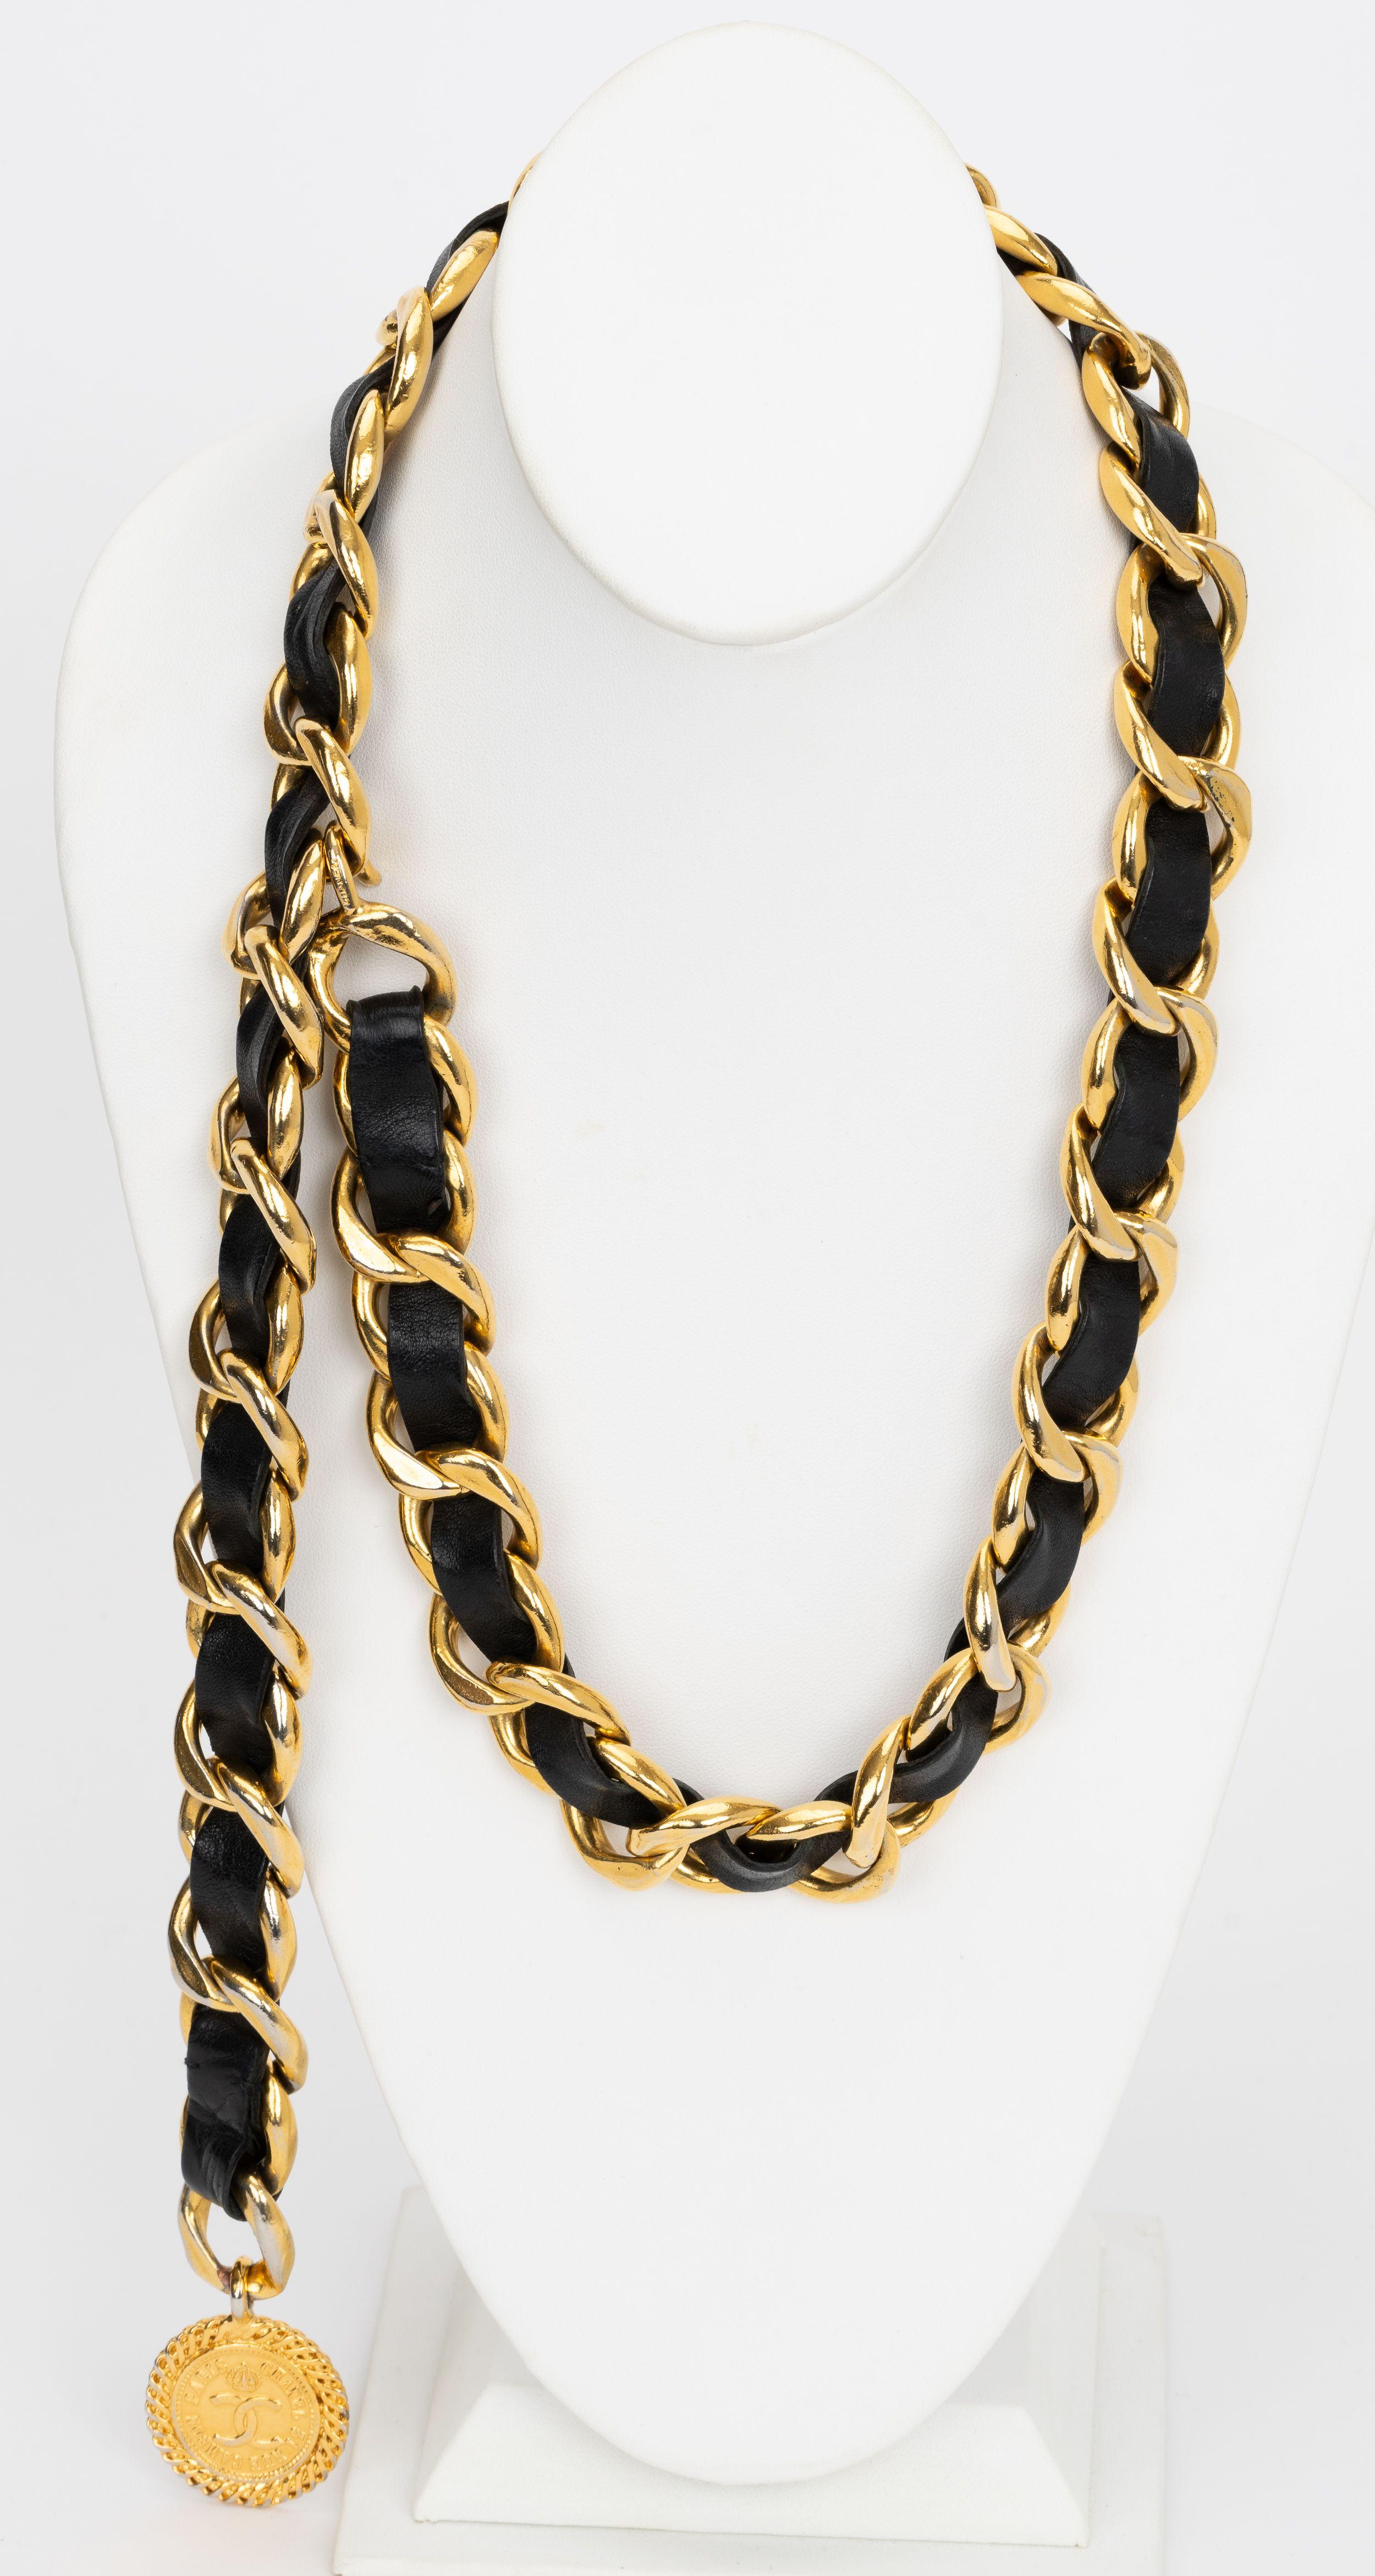 Der Chanel Lambskin CC Medallion Belt besteht aus goldenen Kettengliedern, die mit schwarzem Leder verflochten sind, und einem Chanel CC Medallion. Kann als Gürtel oder als Halskette getragen werden. 80er Jahre Collection'S. Wird mit